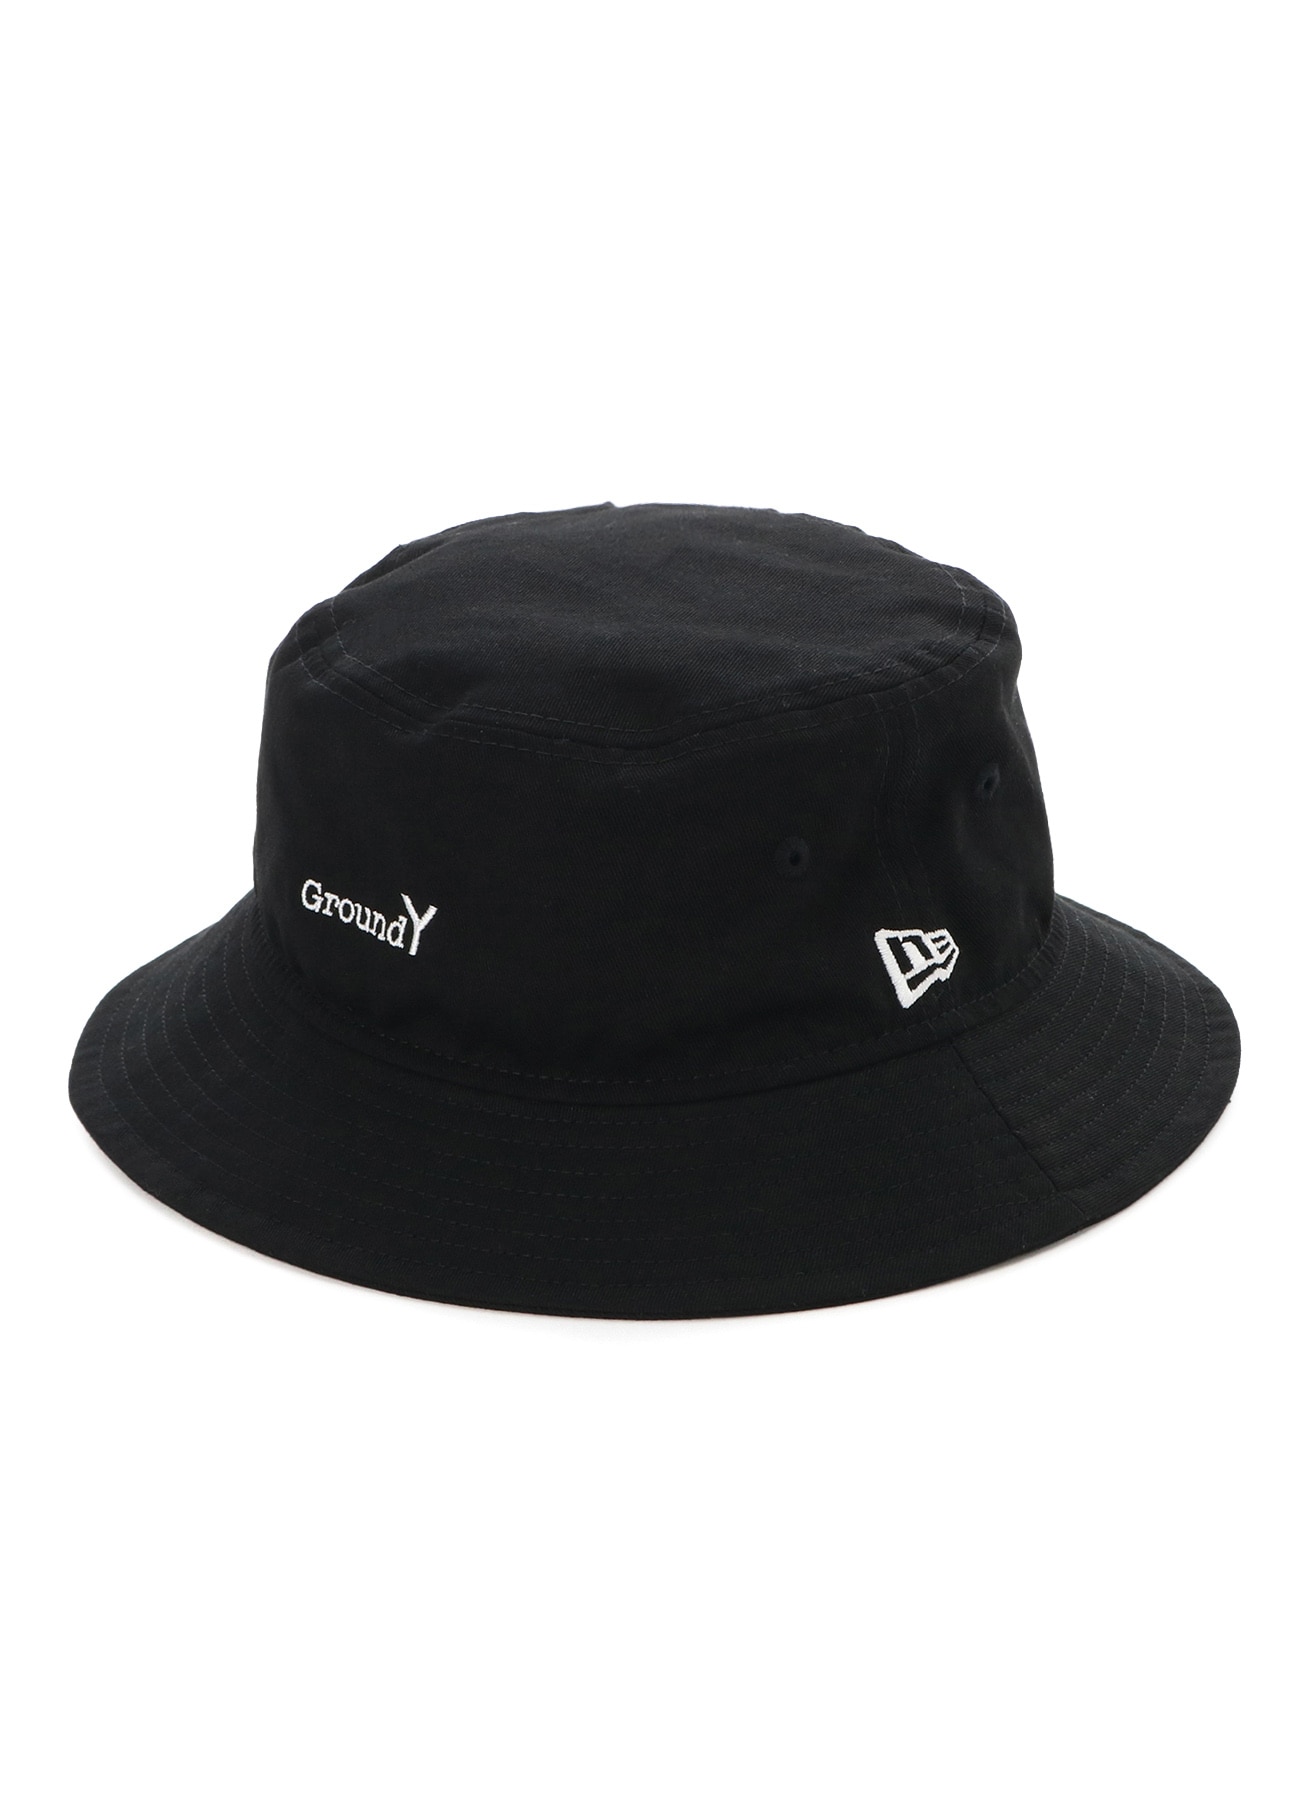 Ground Y×NEW ERA Collection Bucket Hat